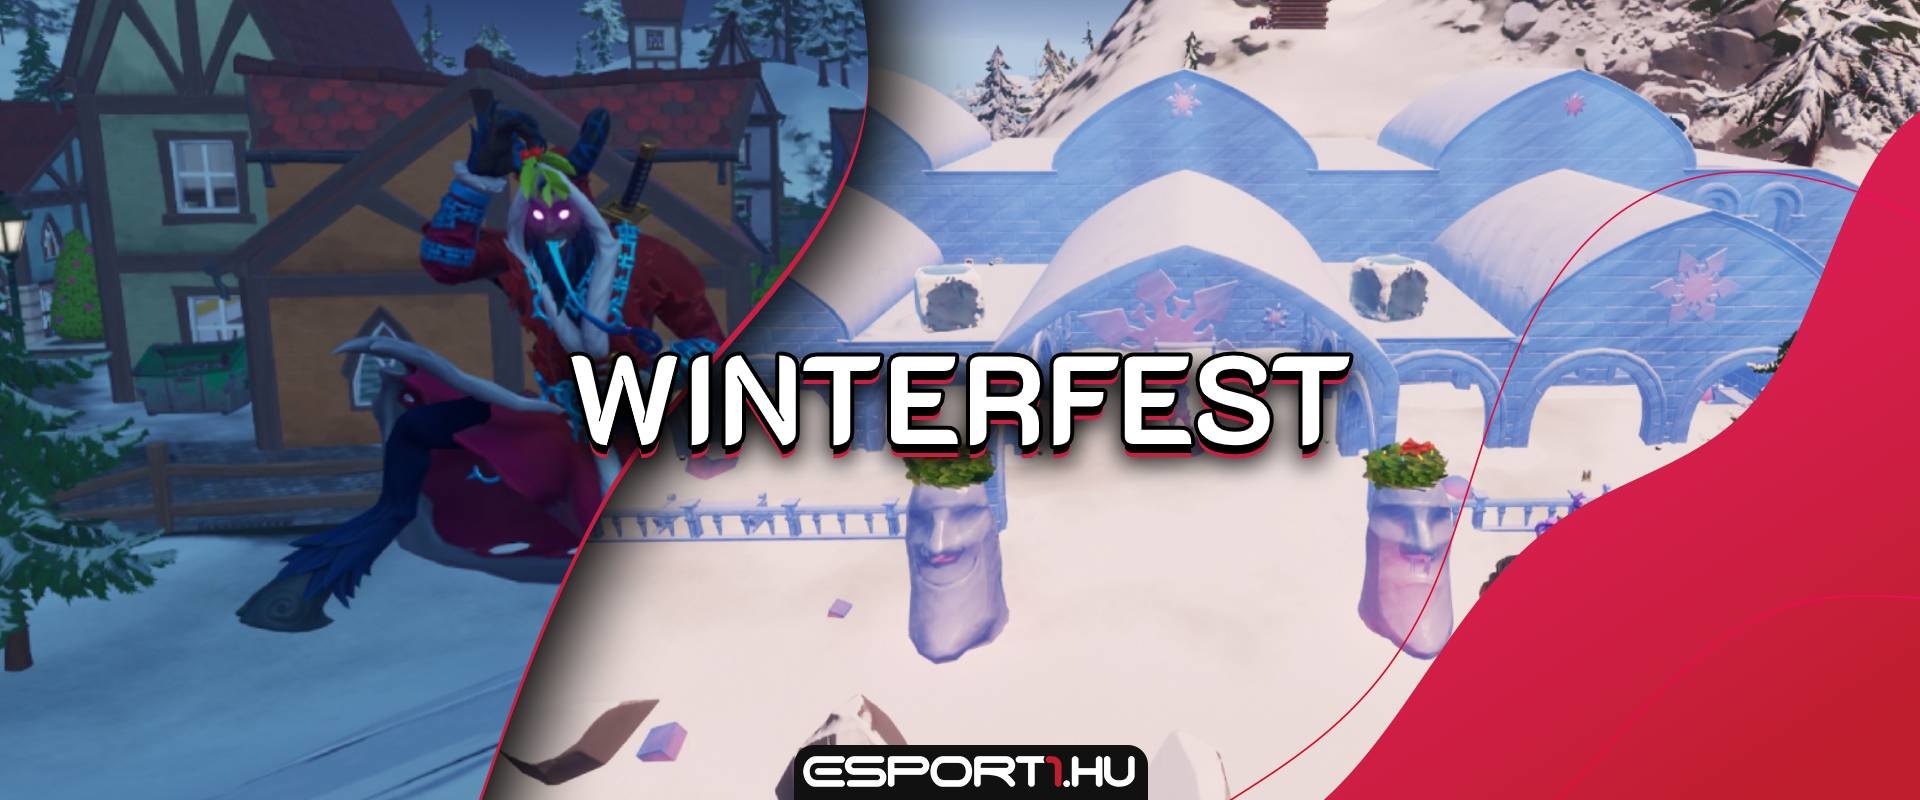 Winterfest néven jön a Fortnite téli eseménye, rengeteg ajándék cucc vár ránk